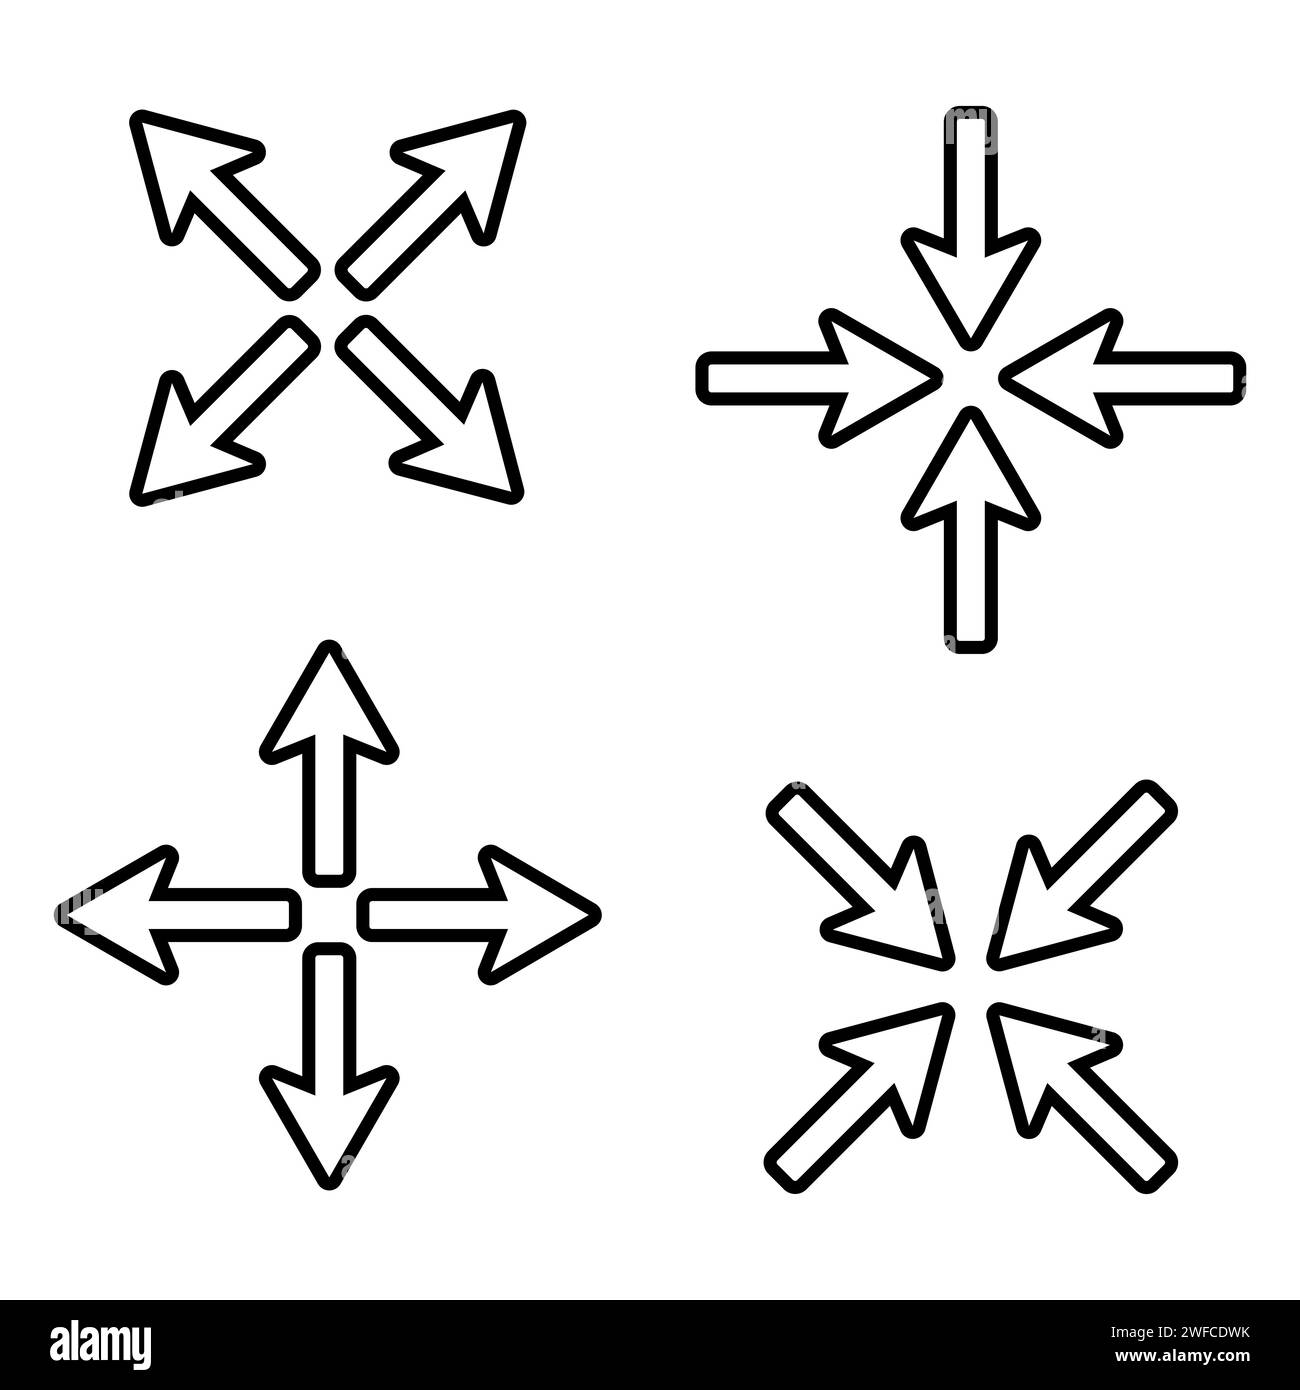 Frecce astratte impostate. Simbolo della croce. Illustrazione vettoriale. immagine stock. EPS 10. Illustrazione Vettoriale